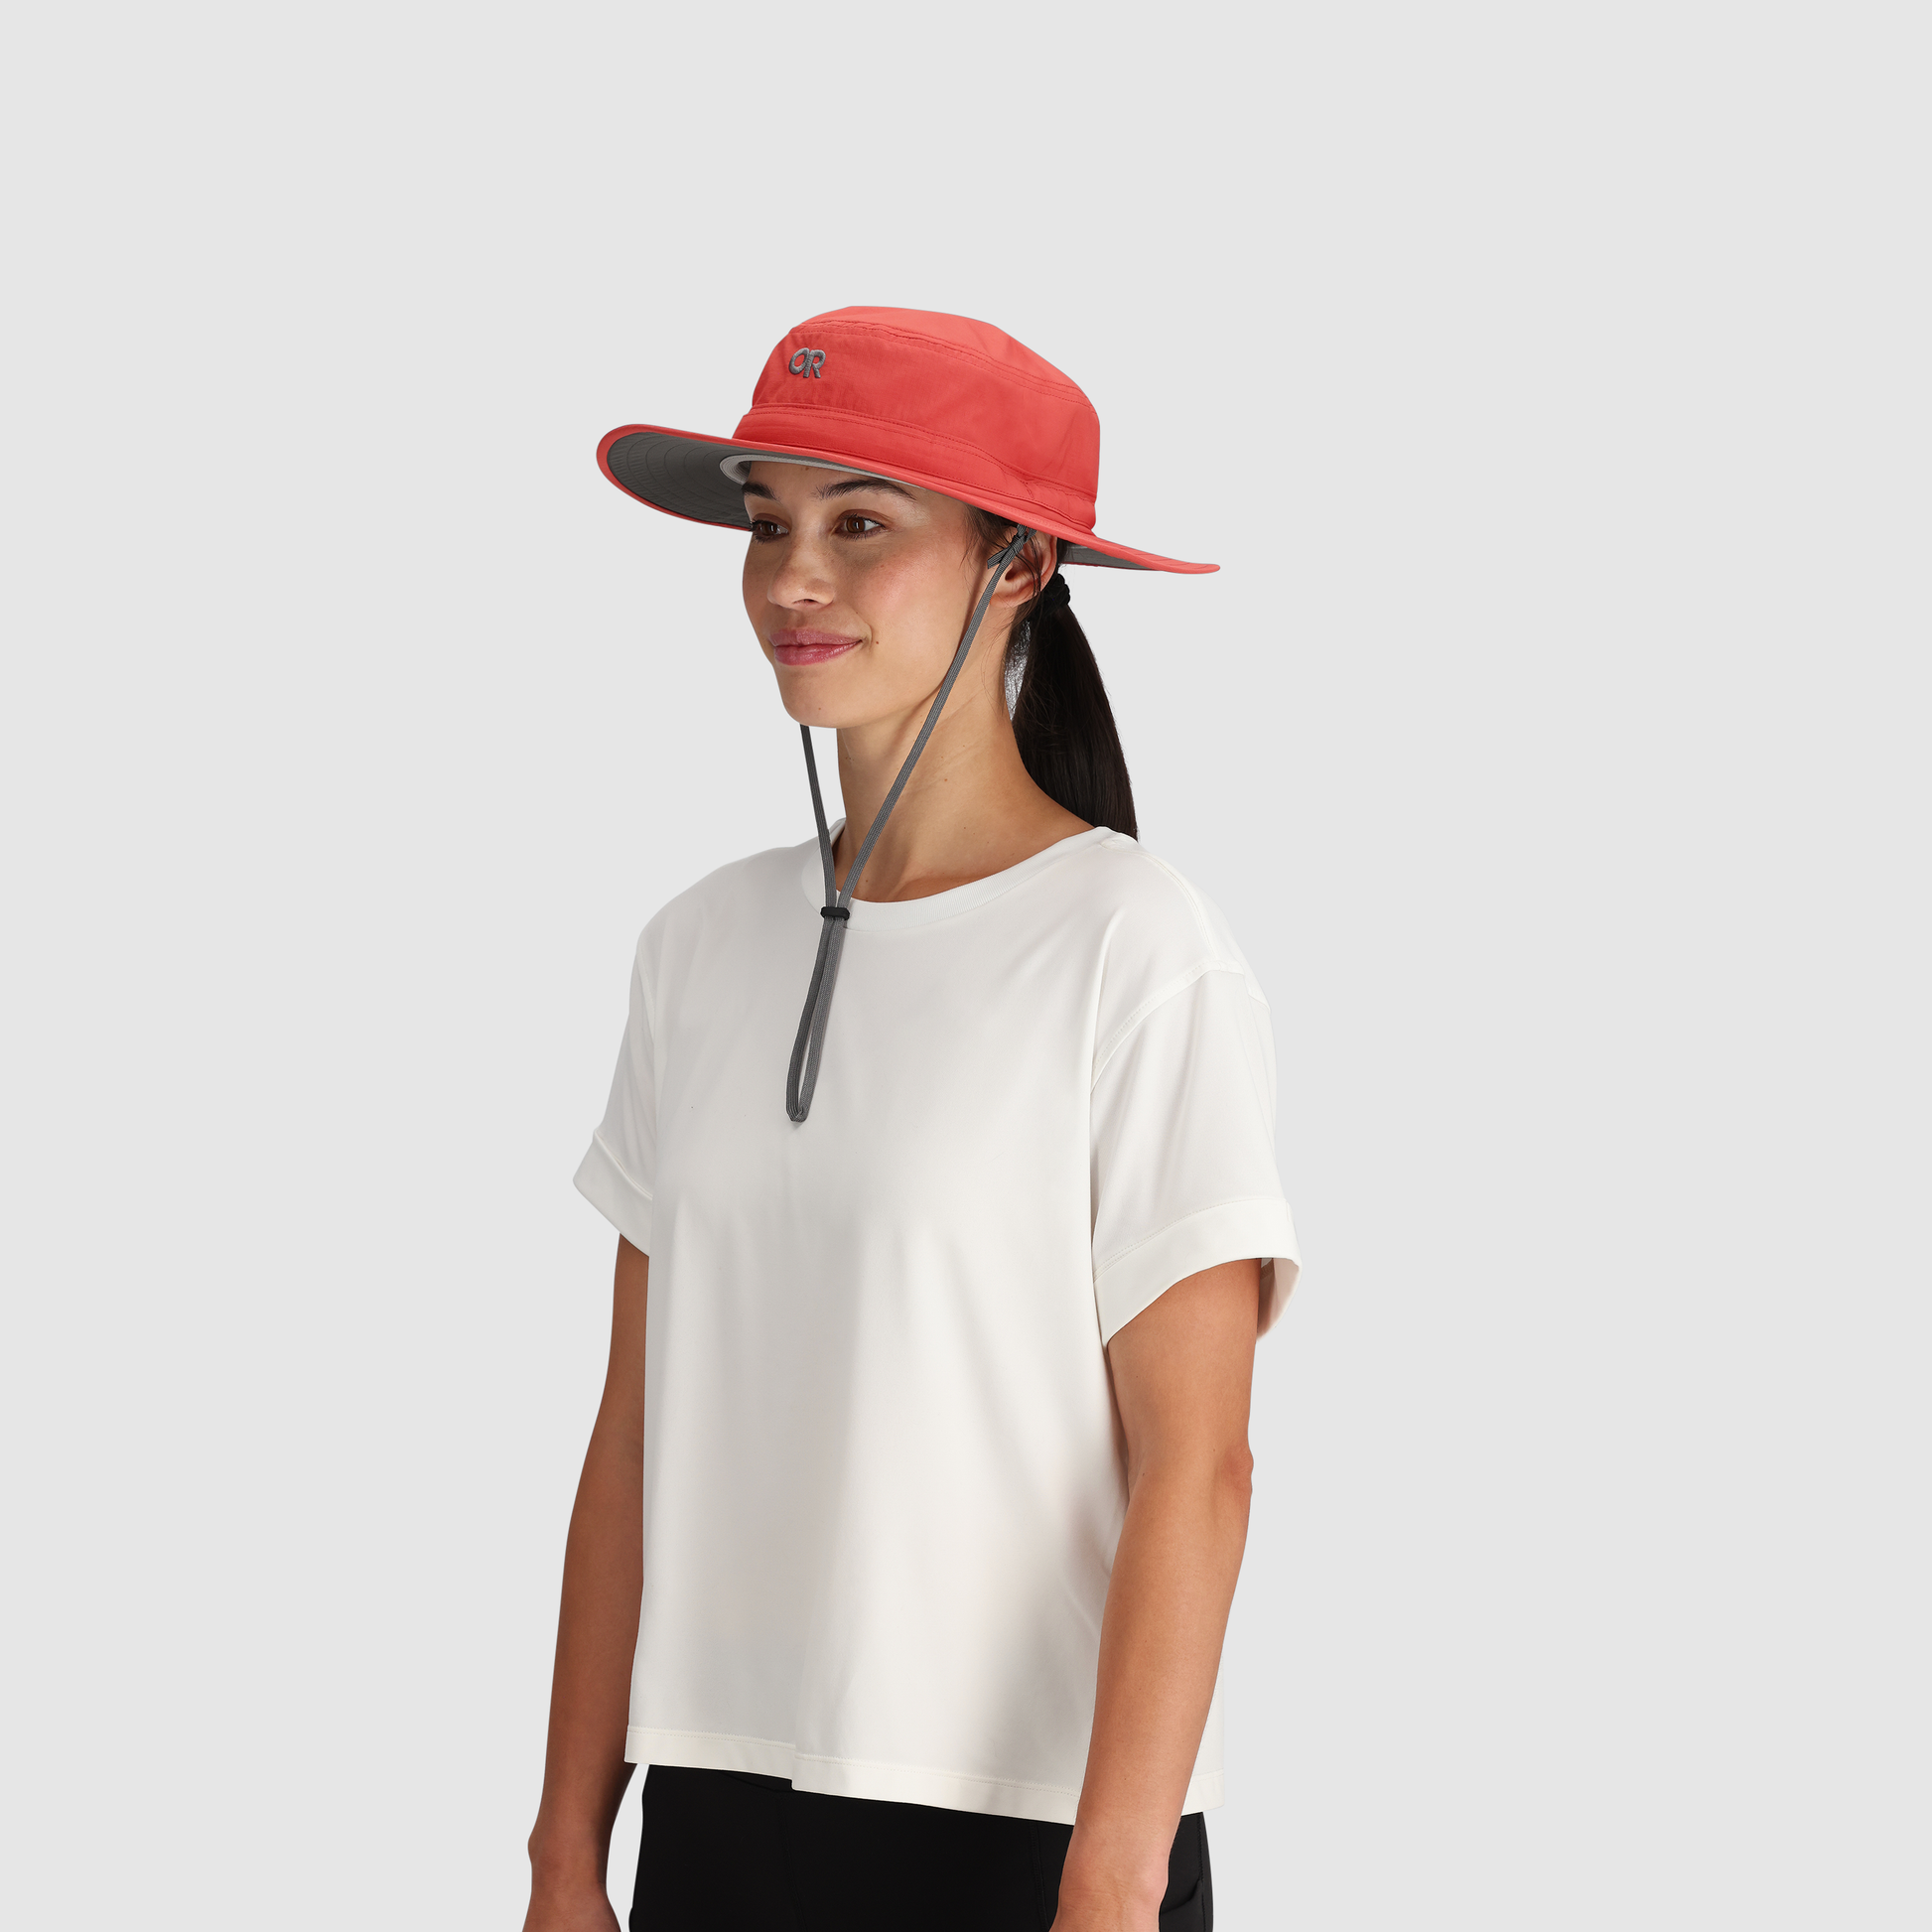 Outdoor Golf Fishing Hats for Men Quick Dry Waterproof Women Men